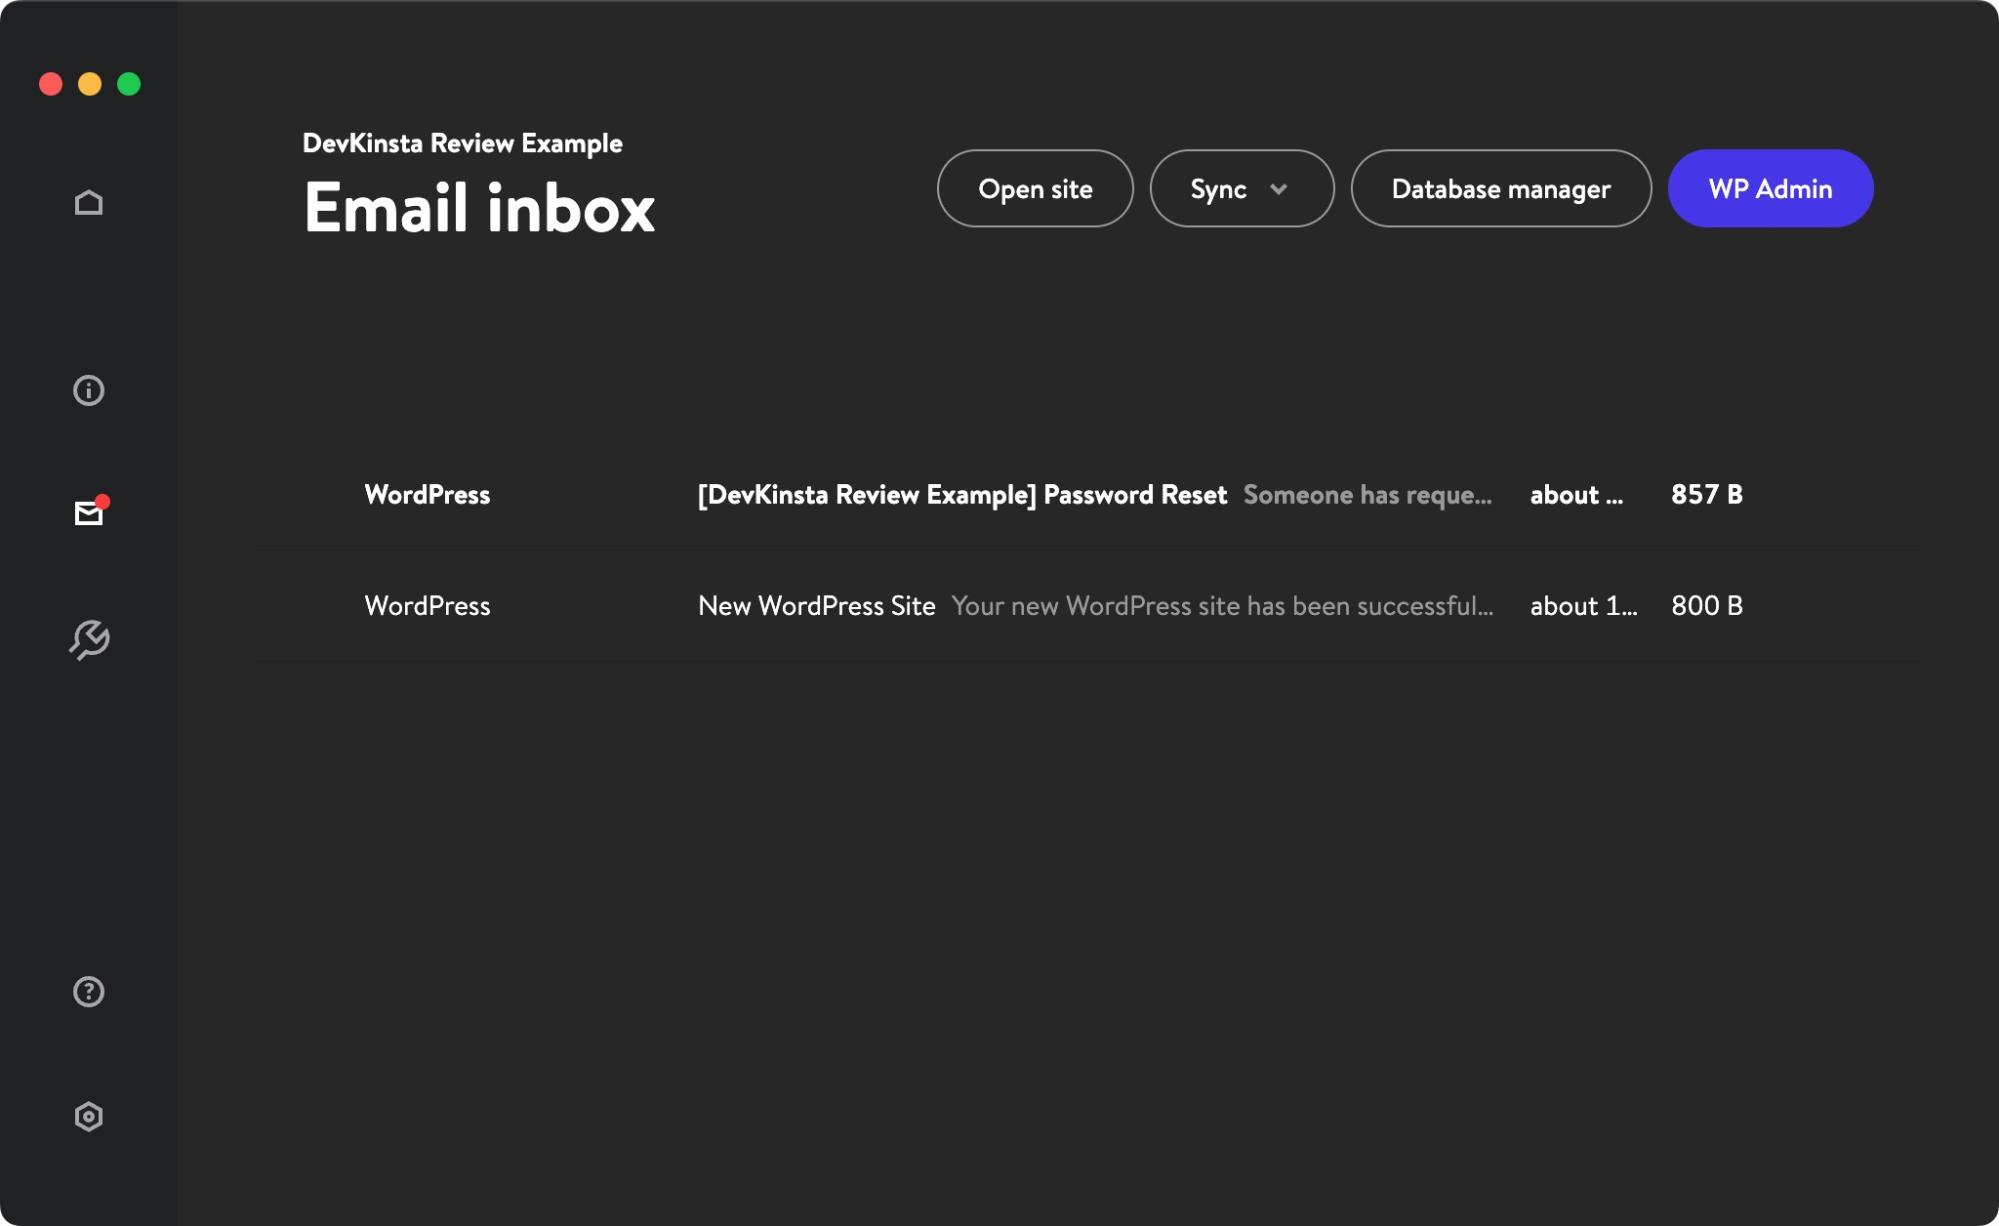 DevKinsta Email Inbox